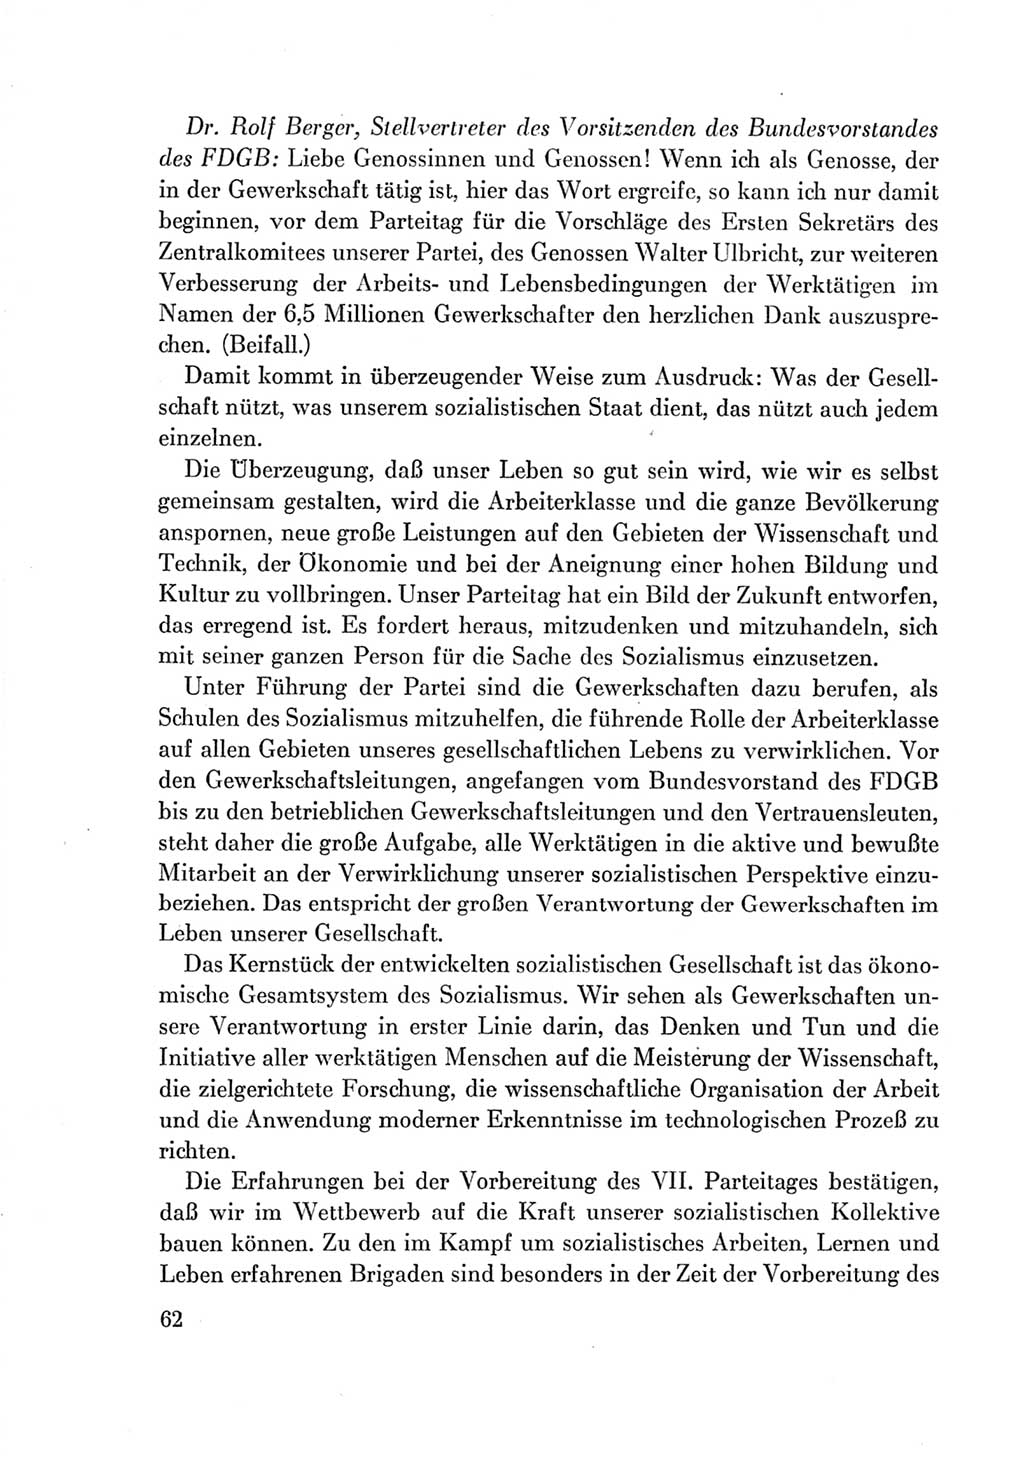 Protokoll der Verhandlungen des Ⅶ. Parteitages der Sozialistischen Einheitspartei Deutschlands (SED) [Deutsche Demokratische Republik (DDR)] 1967, Band Ⅱ, Seite 62 (Prot. Verh. Ⅶ. PT SED DDR 1967, Bd. Ⅱ, S. 62)